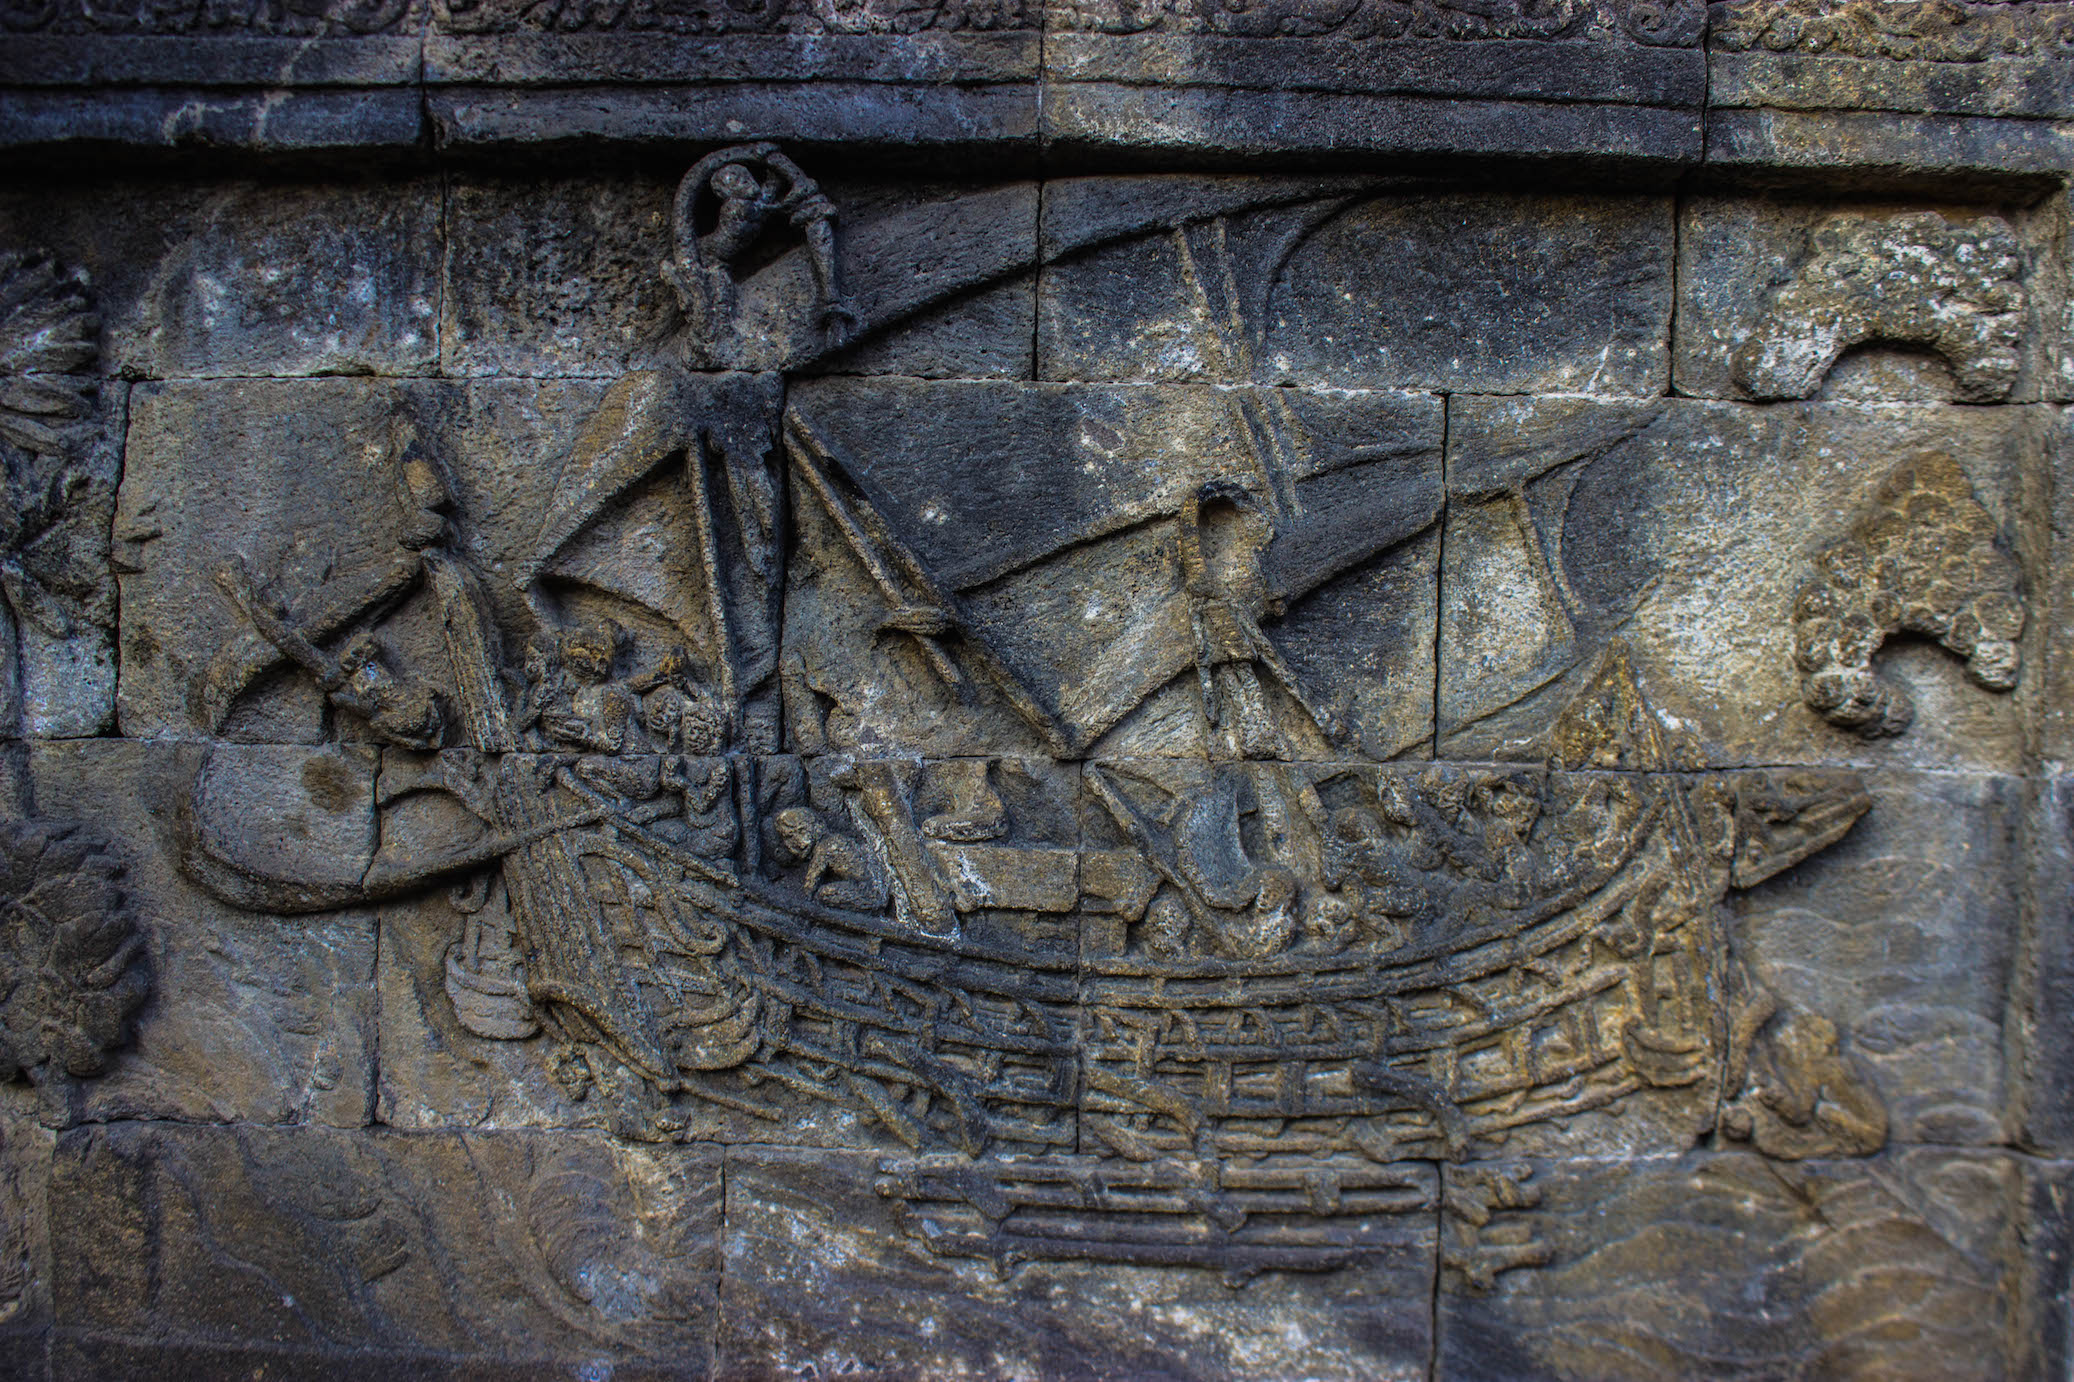 Ship carving, Borobudur, Indonesia